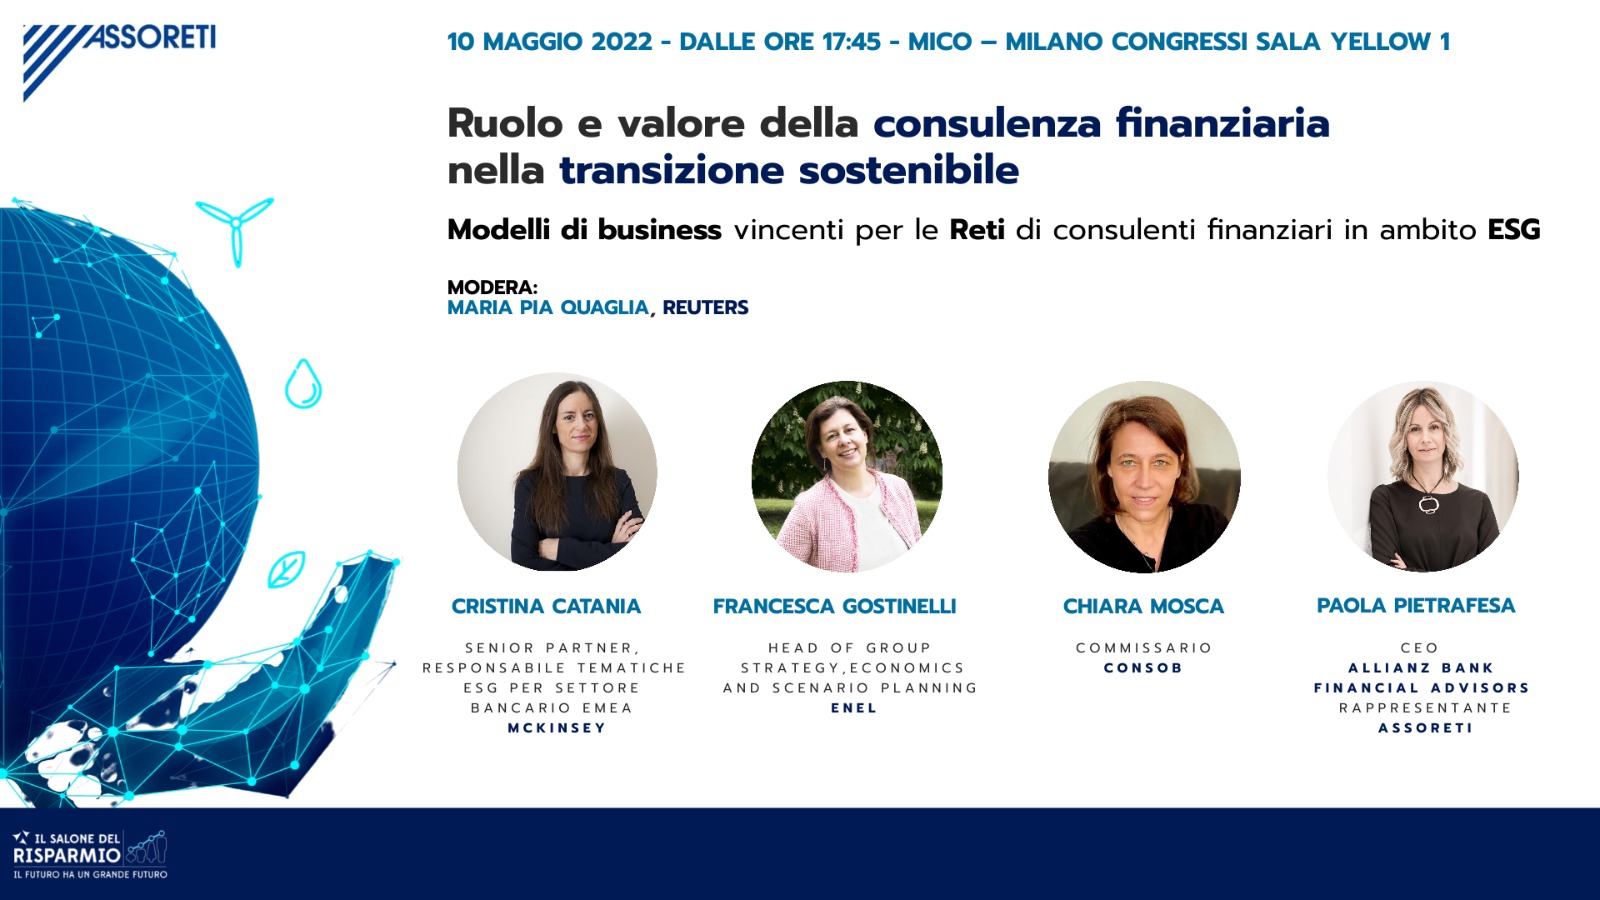 CONFERENZA – Ruolo e valore della consulenza finanziaria nella transizione sostenibile – 10 maggio 2022 – Salone del Risparmio